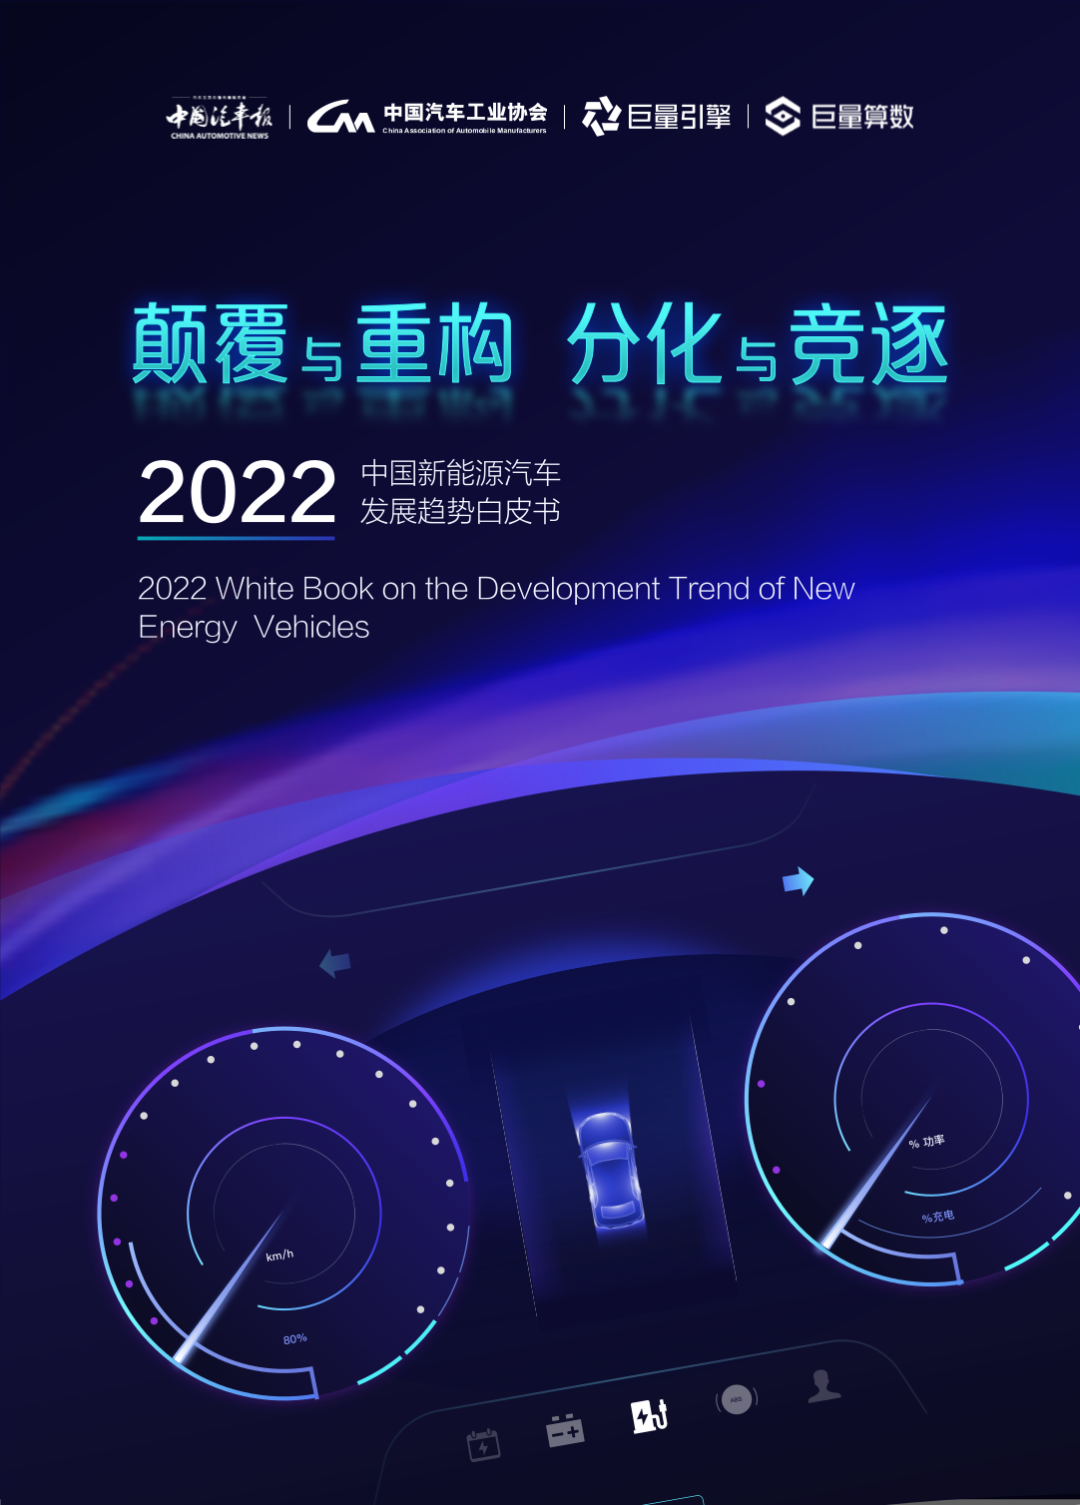 读懂这份《2022中国新能源汽车发展趋势白皮书》